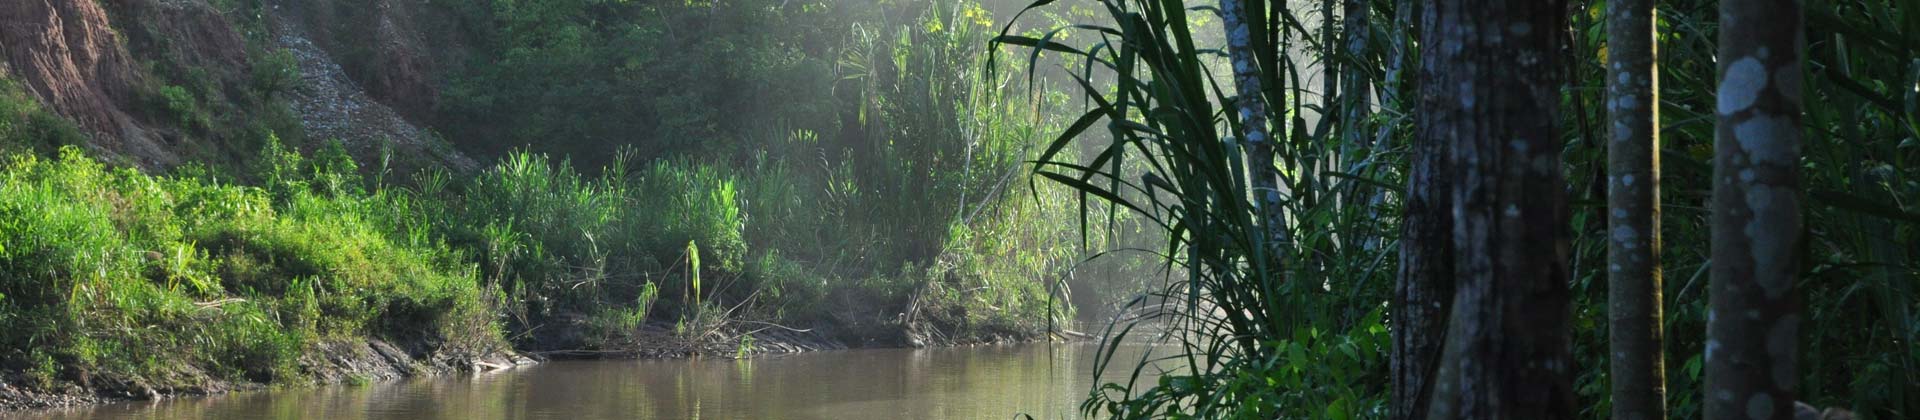 Amazonasgebiet Peru